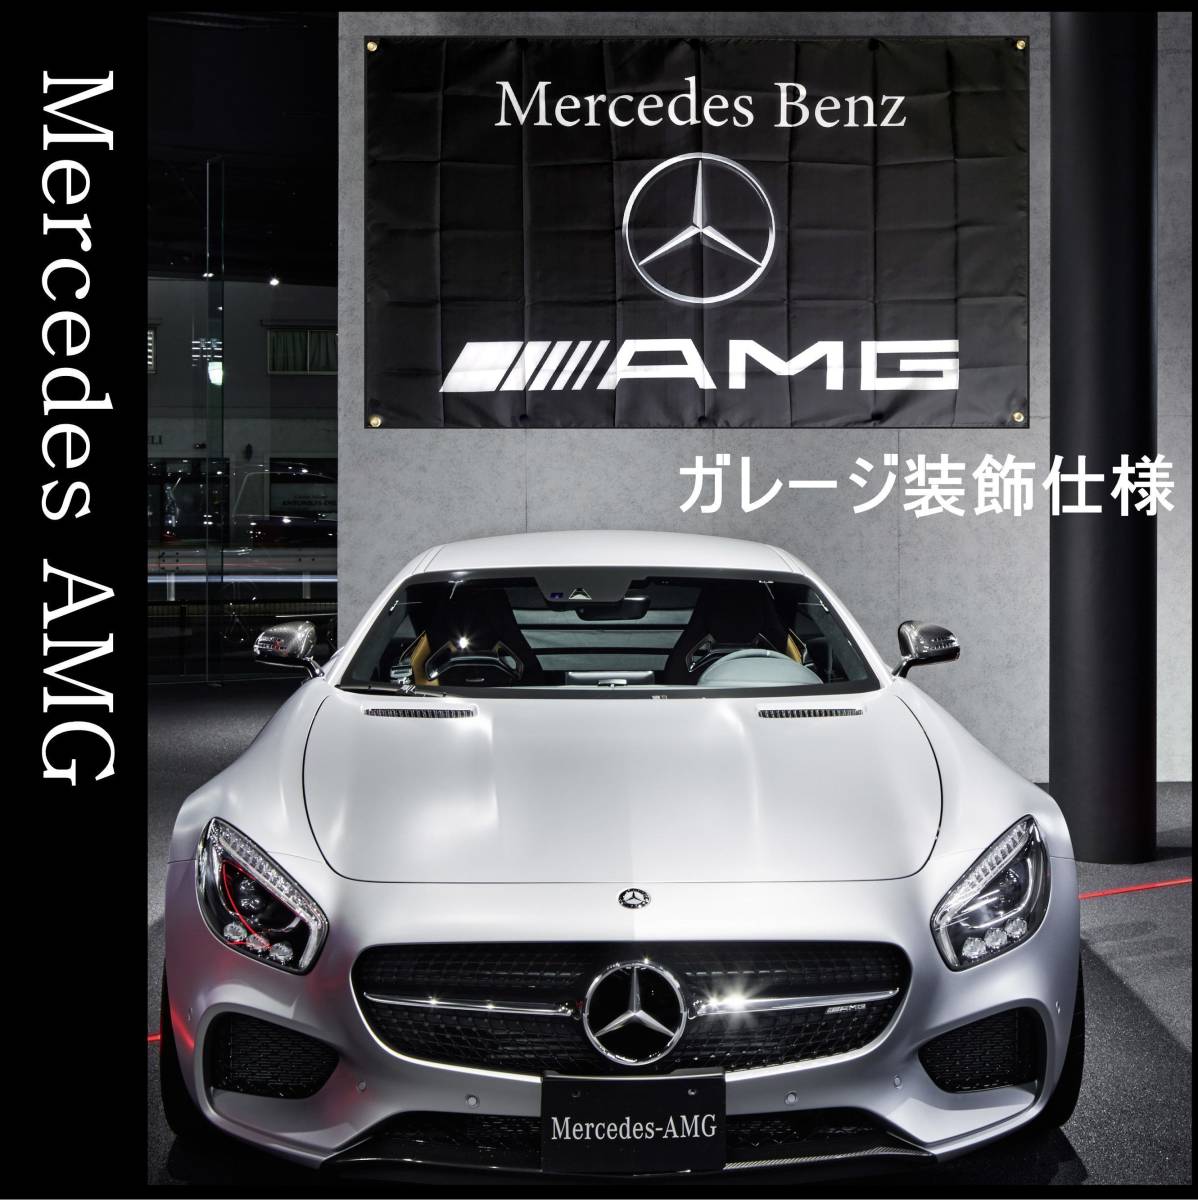 ★ガレージ装飾仕様★ 3Dエンブレム G05 ベンツ旗 ガレージ雑貨 メルセデス Mercedes Benz ベンツフラッグ AMG メルセデスベンツ ポスター_画像1